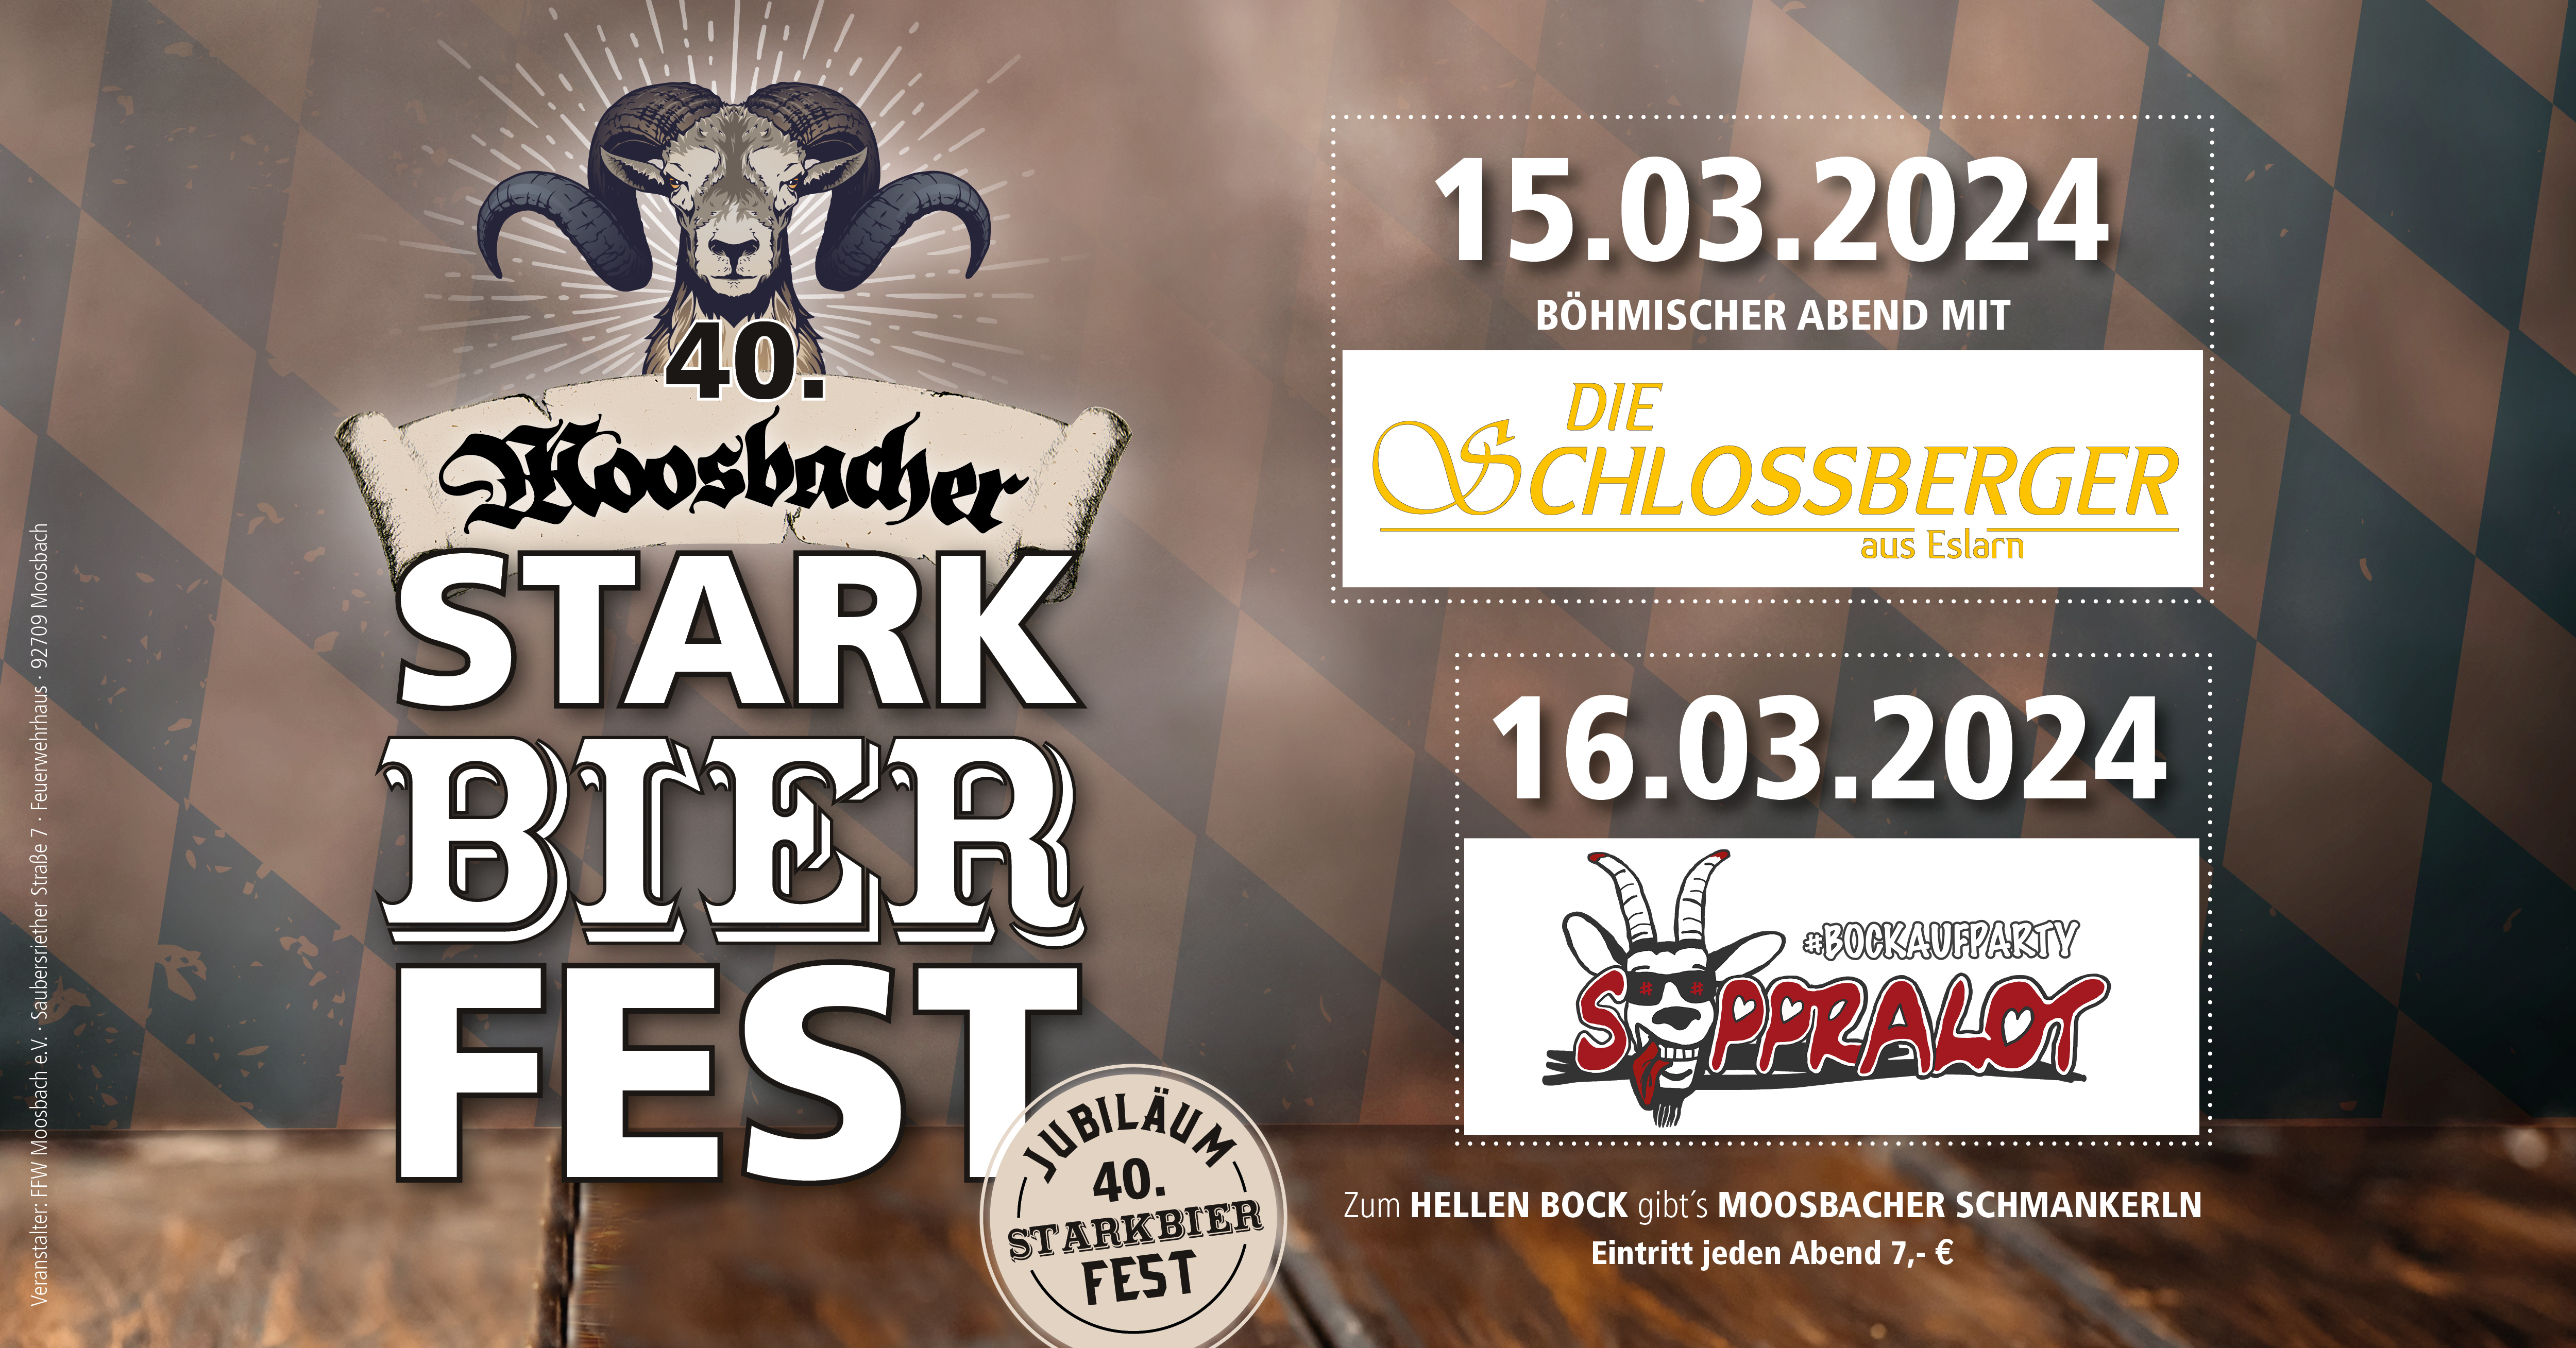 Facebook Starkbierfest24 1 0e711